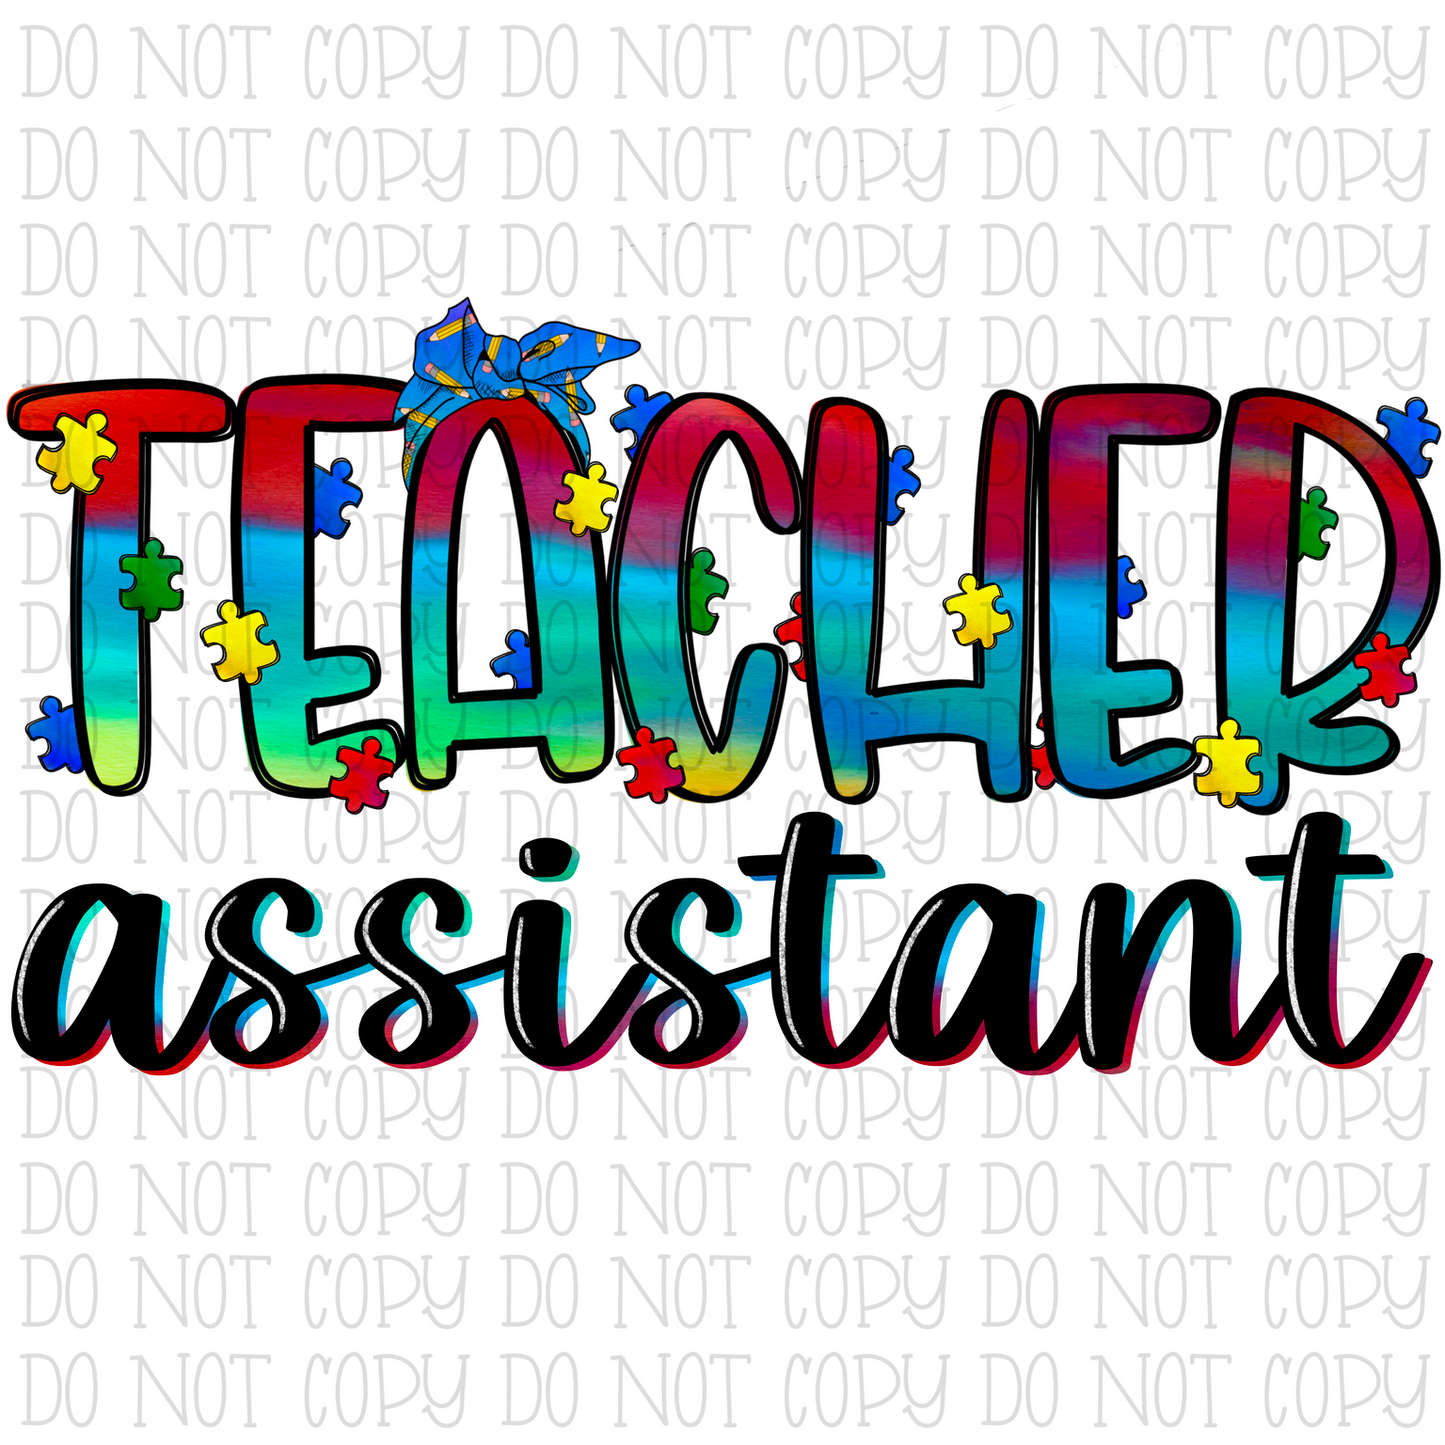 Teacher Assistant - Autism Awareness